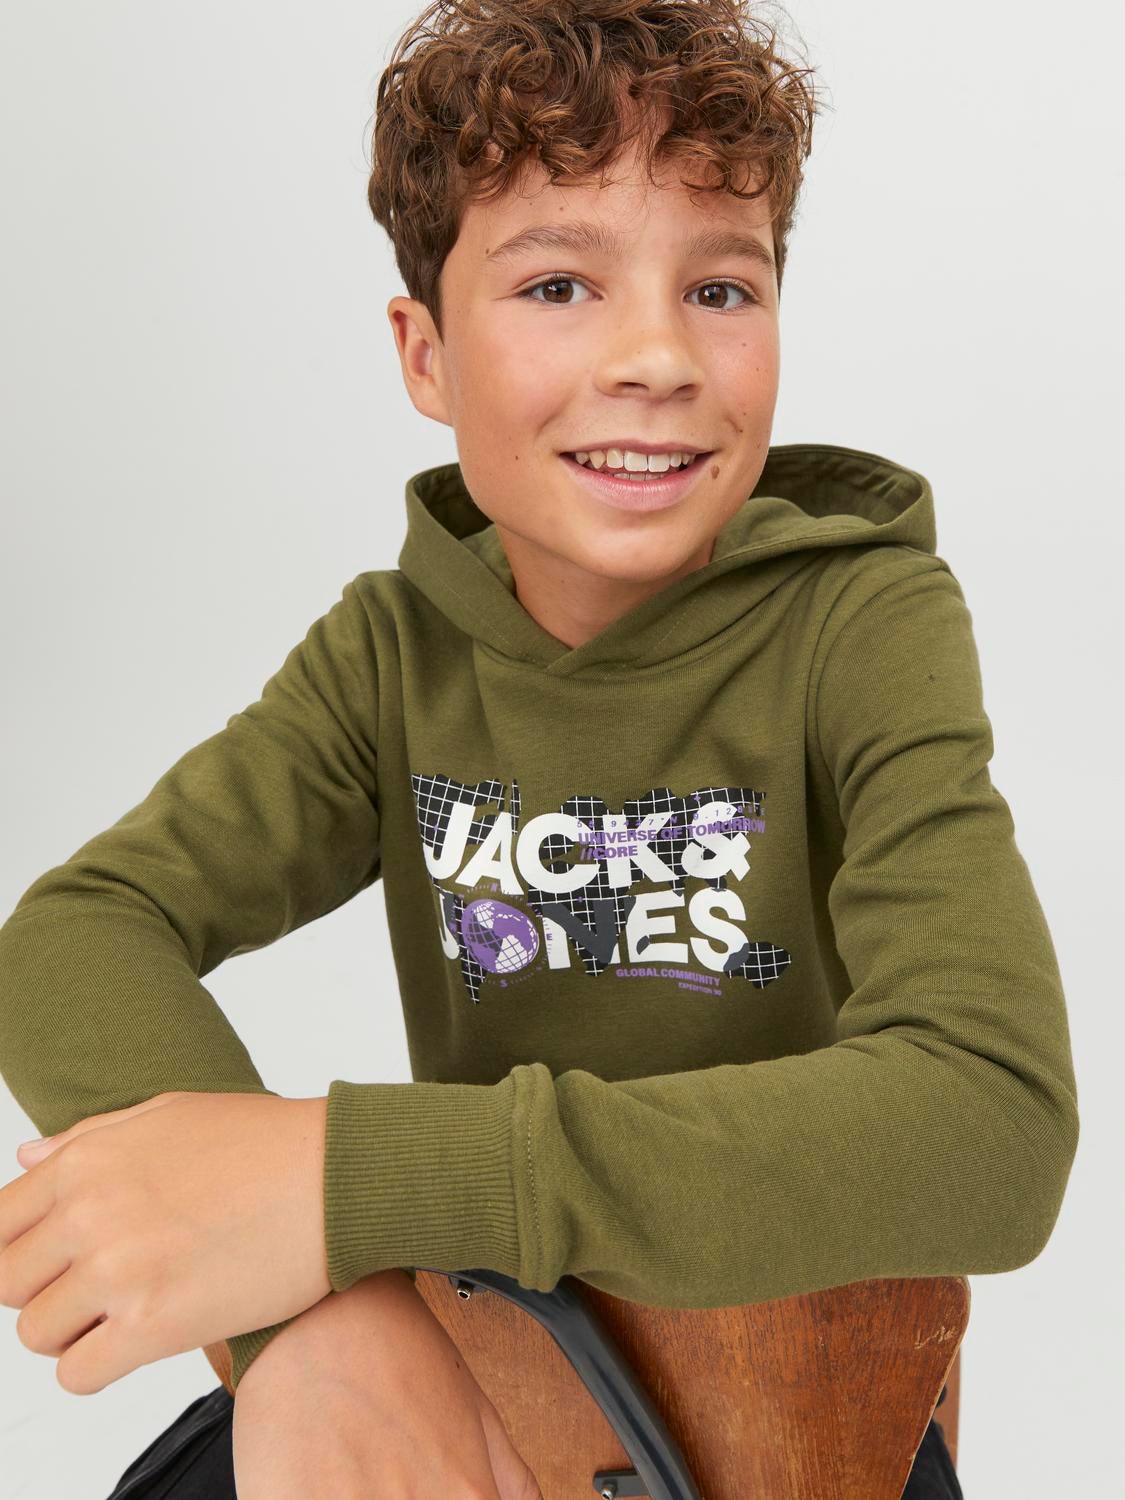 Sudadera Jack&Jones Junior verde con capucha para niño